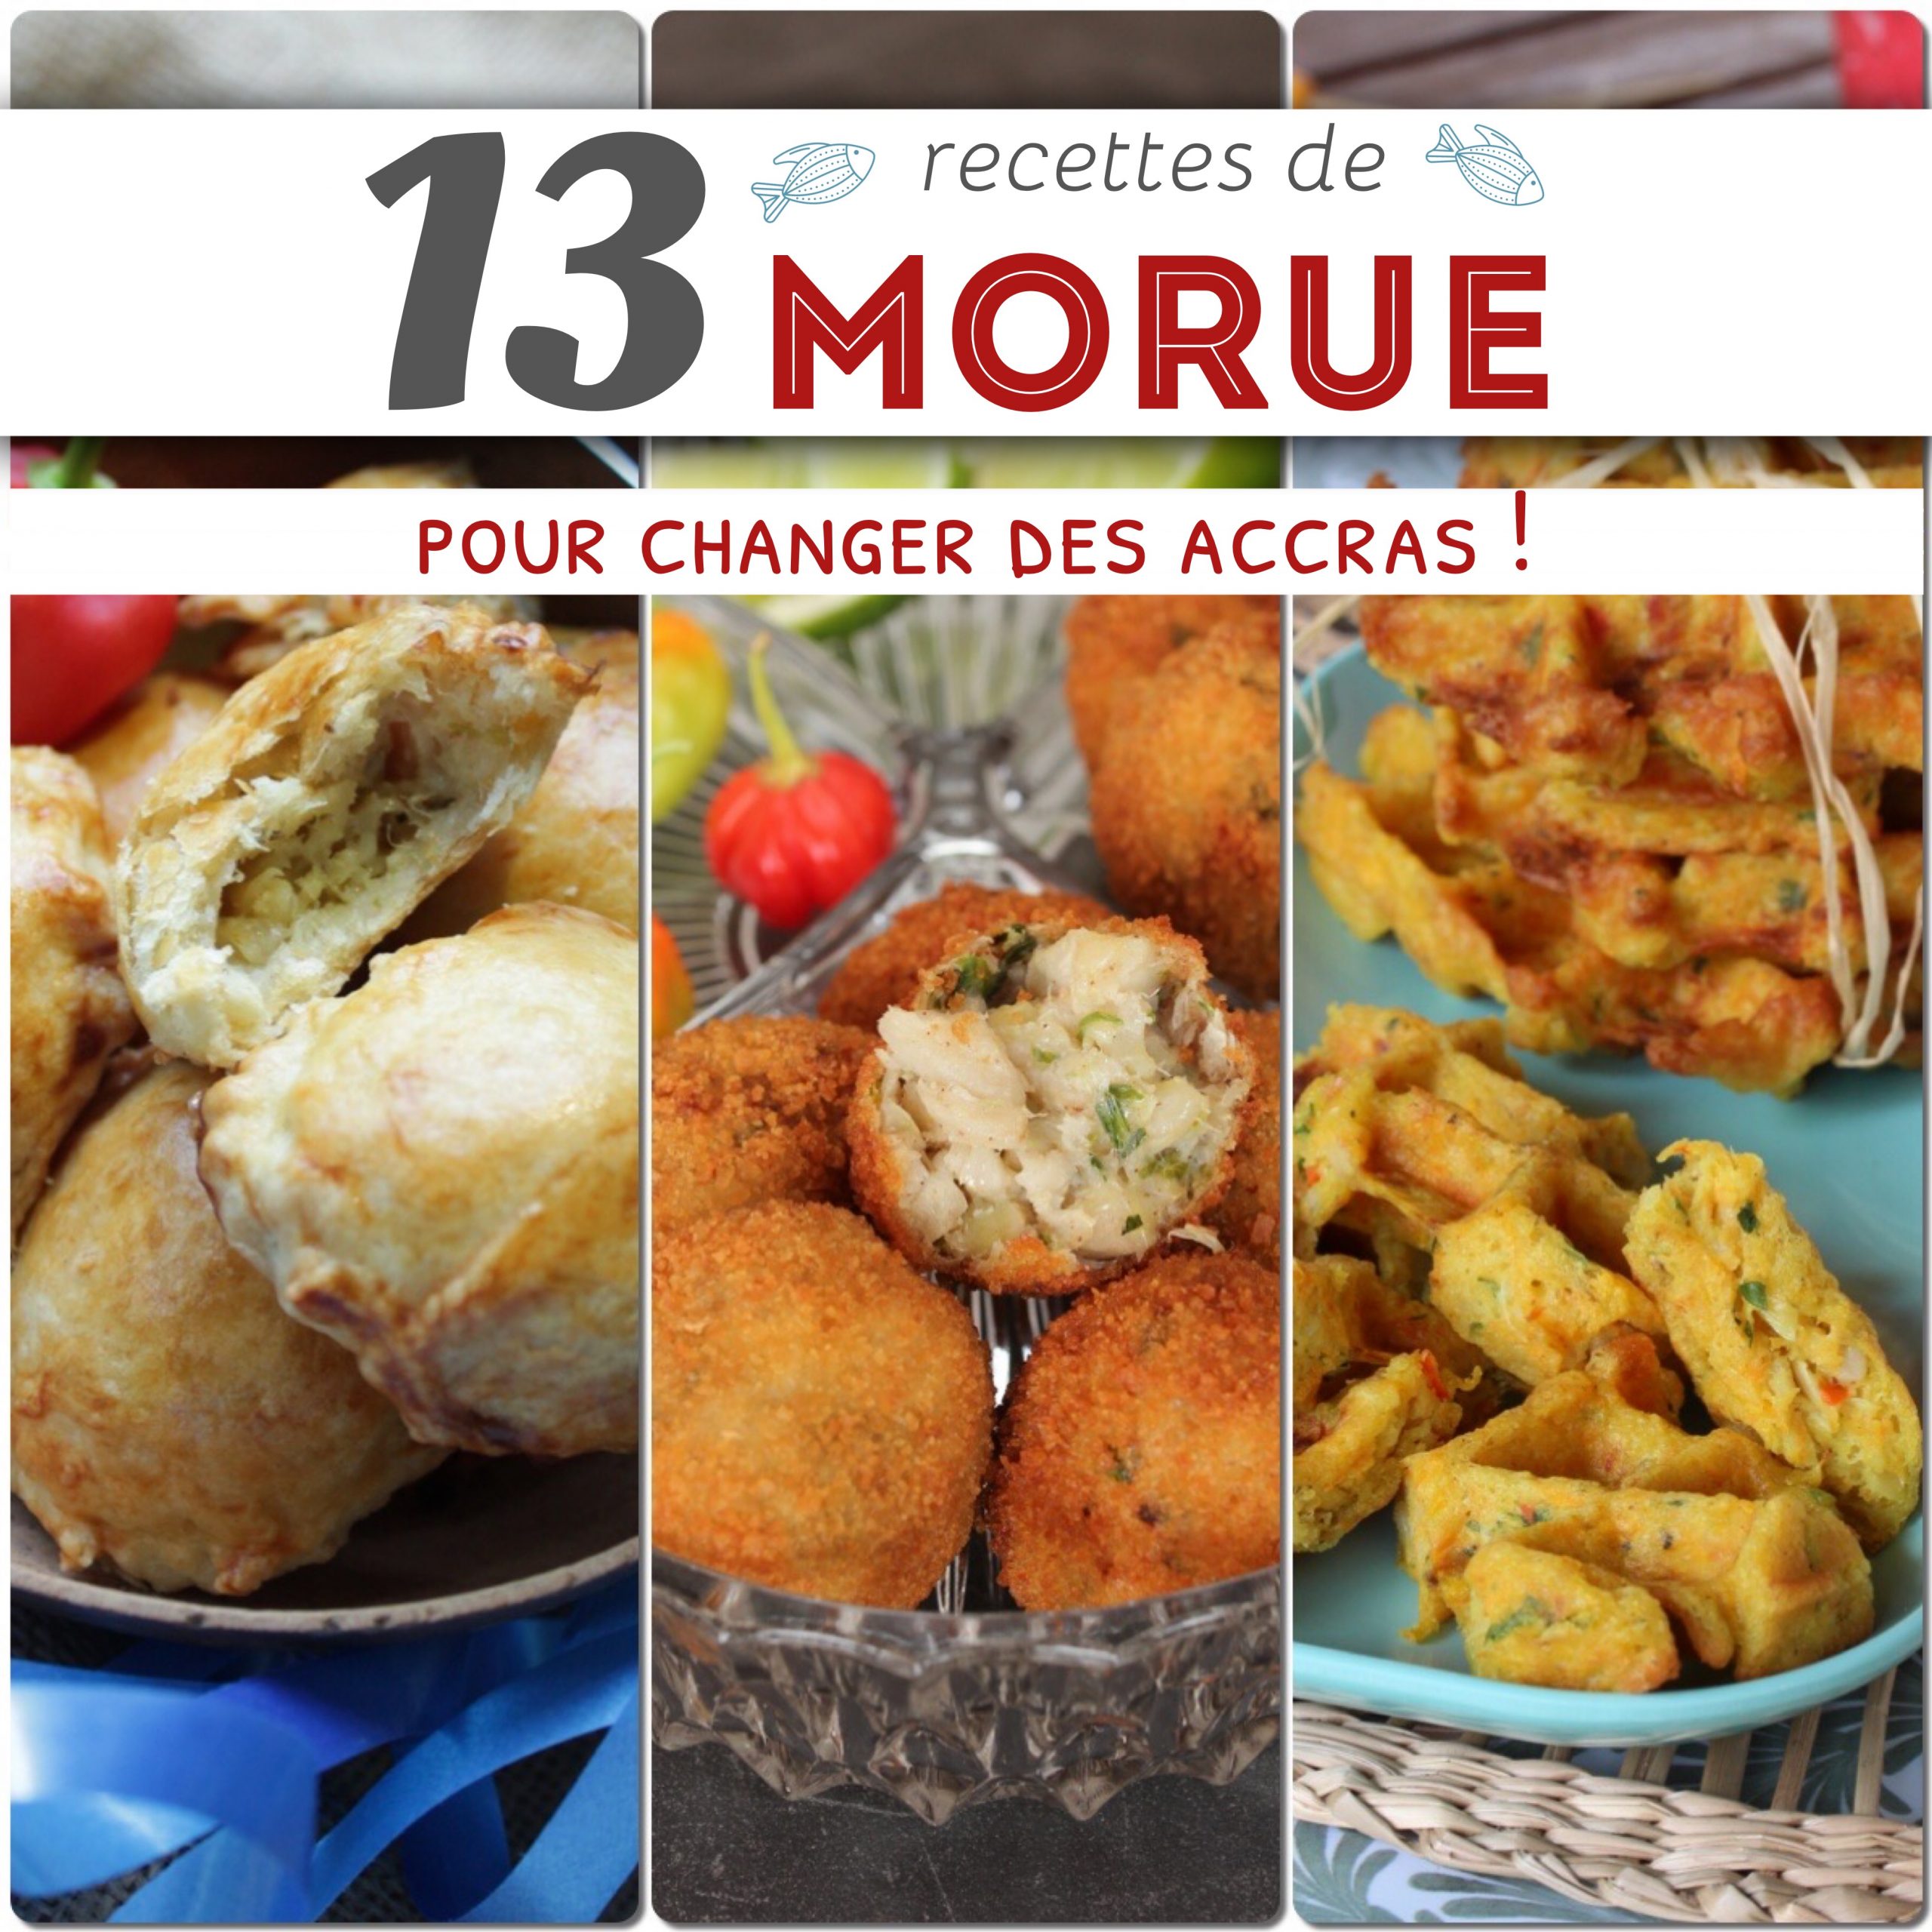 recettes de morue Guadeloupe